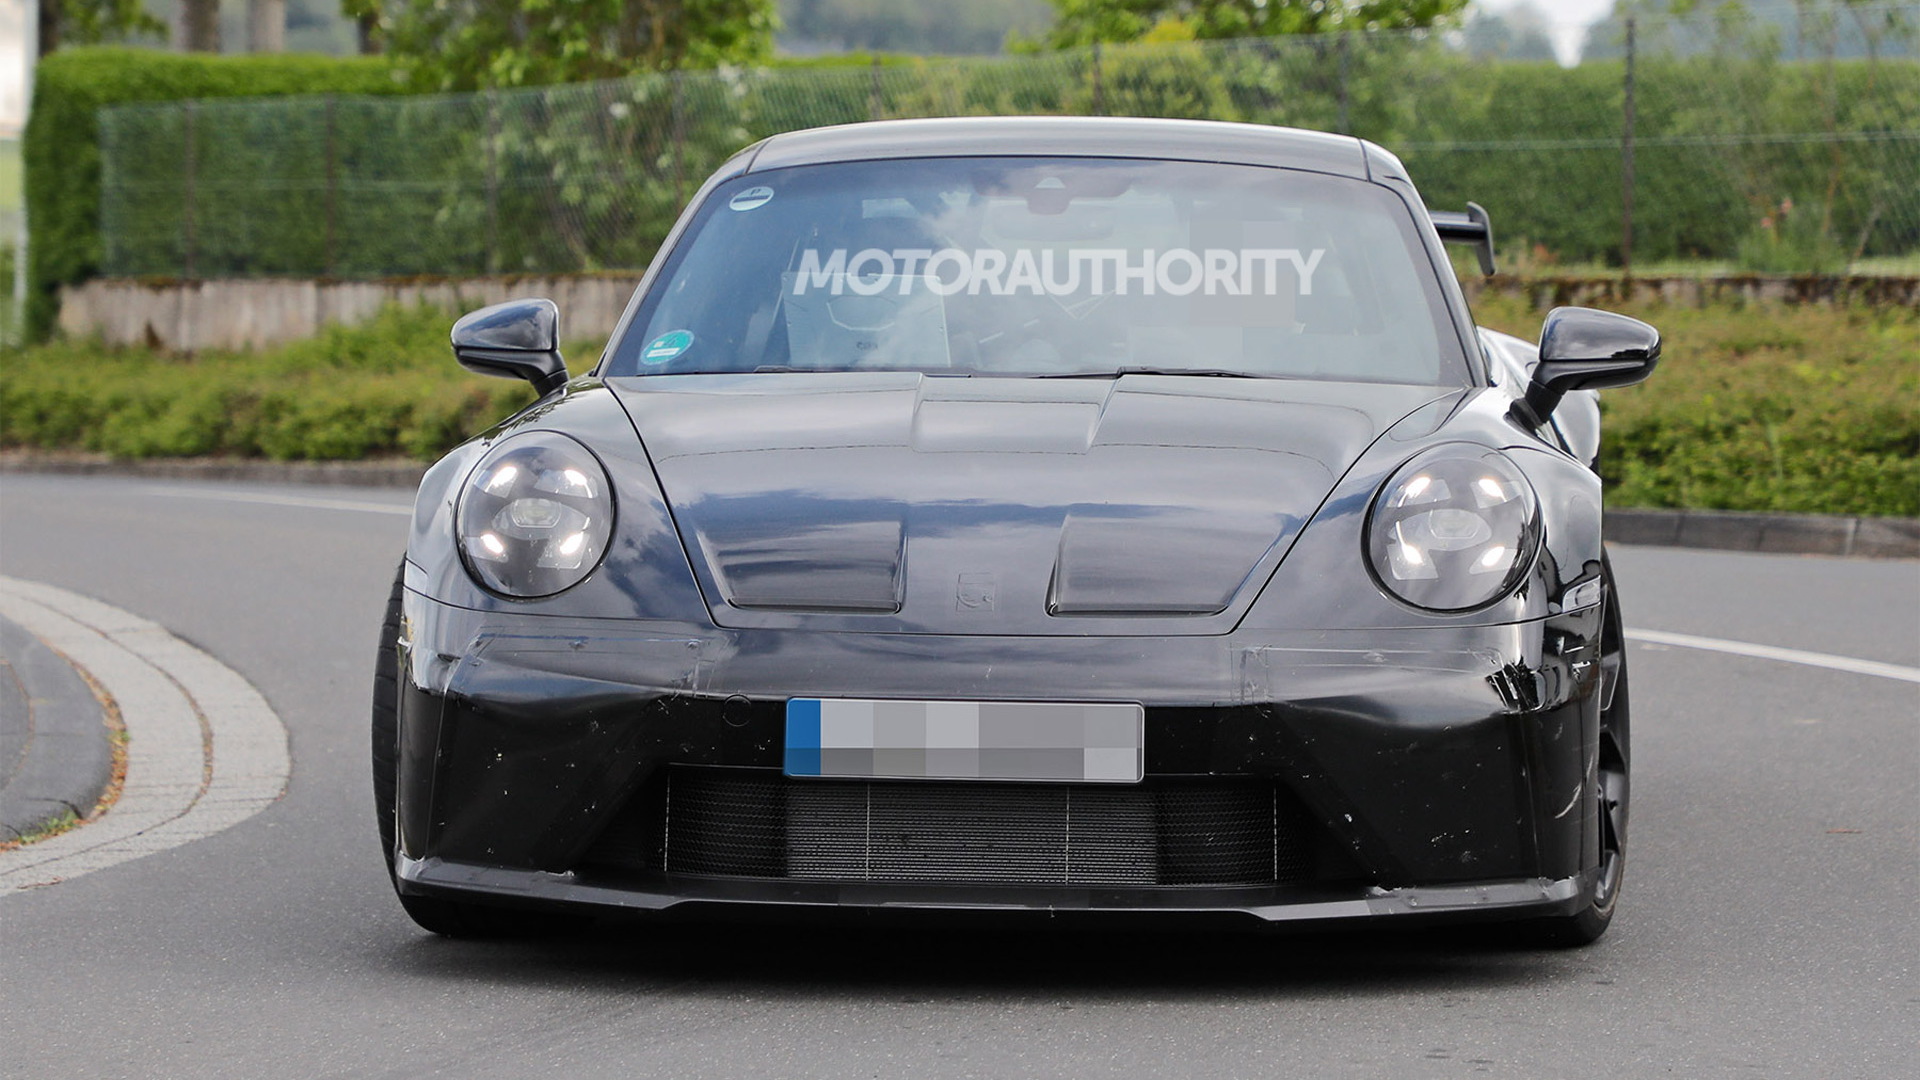 2024 Porsche 911 GT3 facelift spy shots - Photo credit: Baldauf